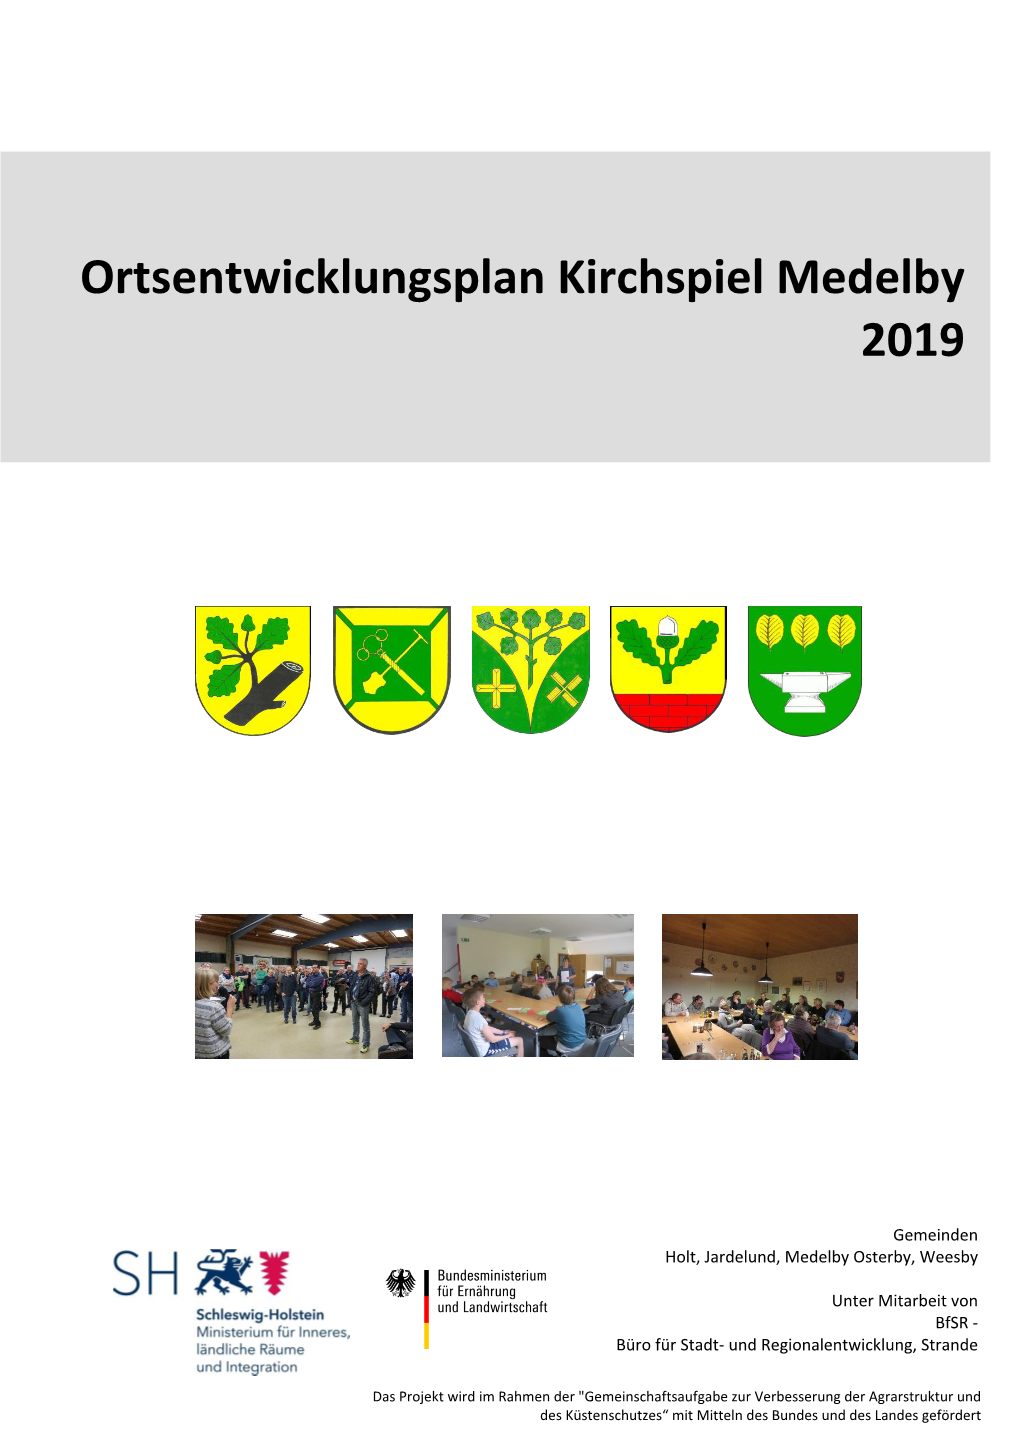 Ortsentwicklungsplan Kirchspiel Medelby 2019